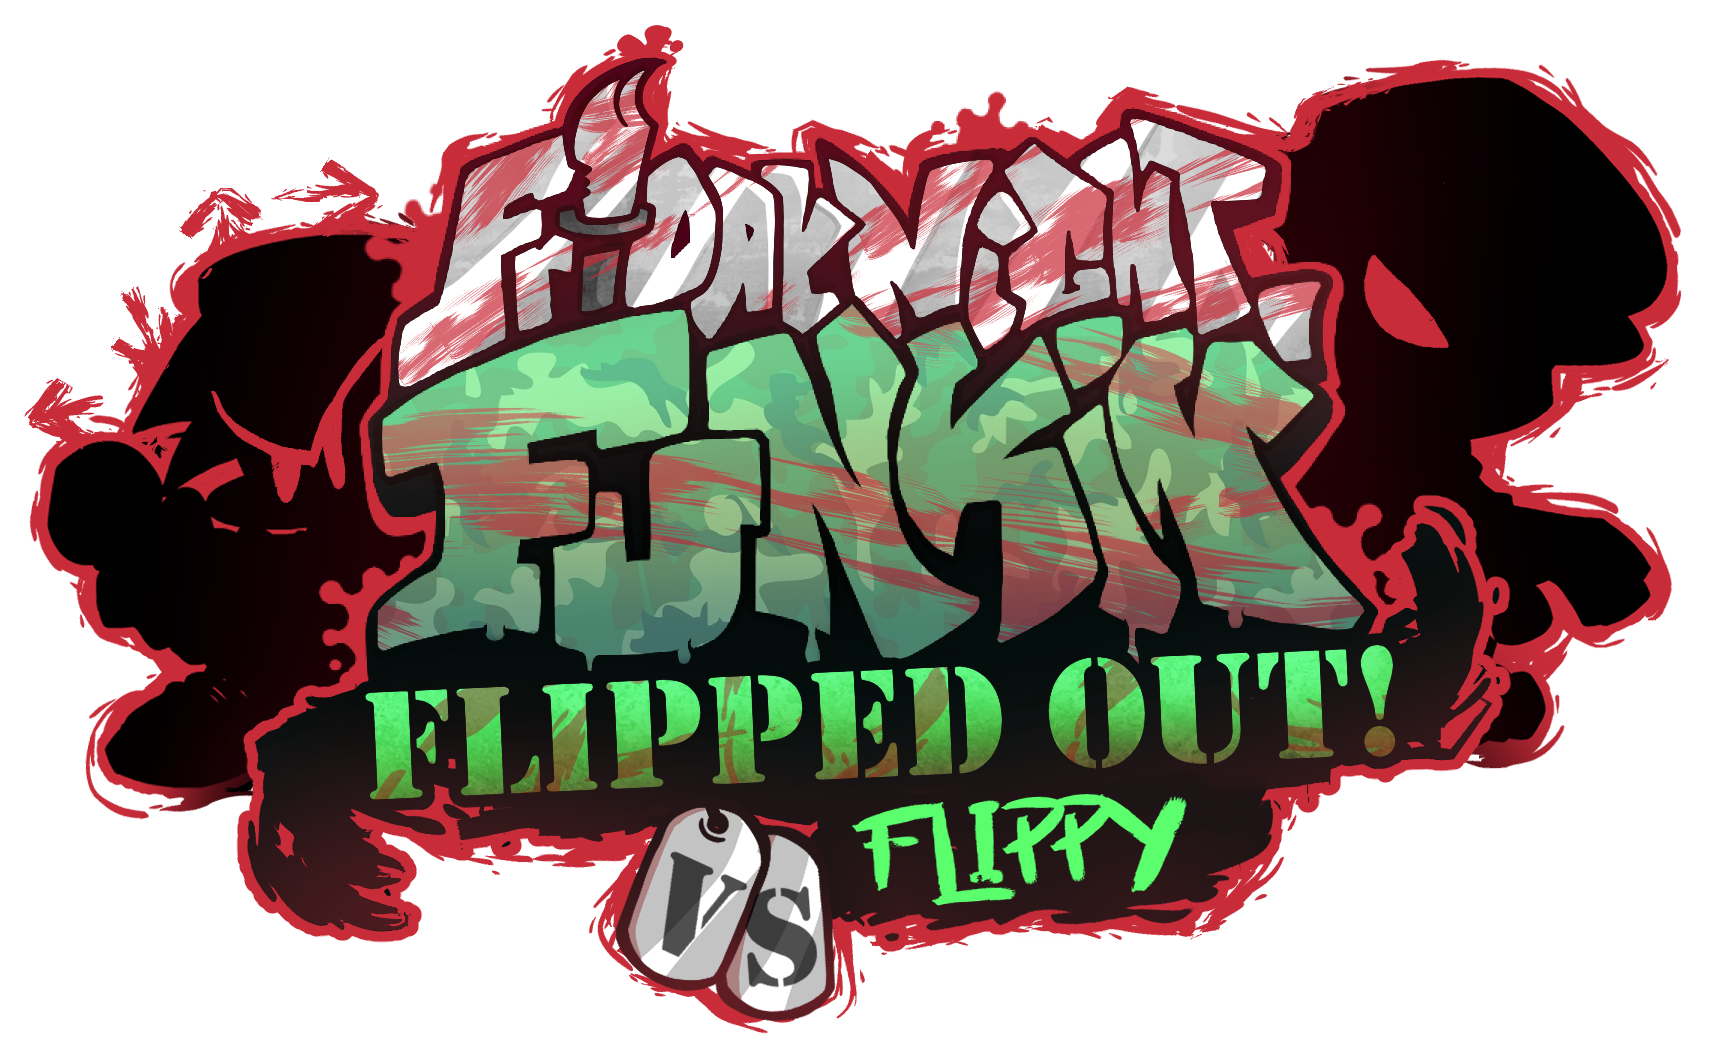 Fnf Flippy Test 2 - Fnf Test Games